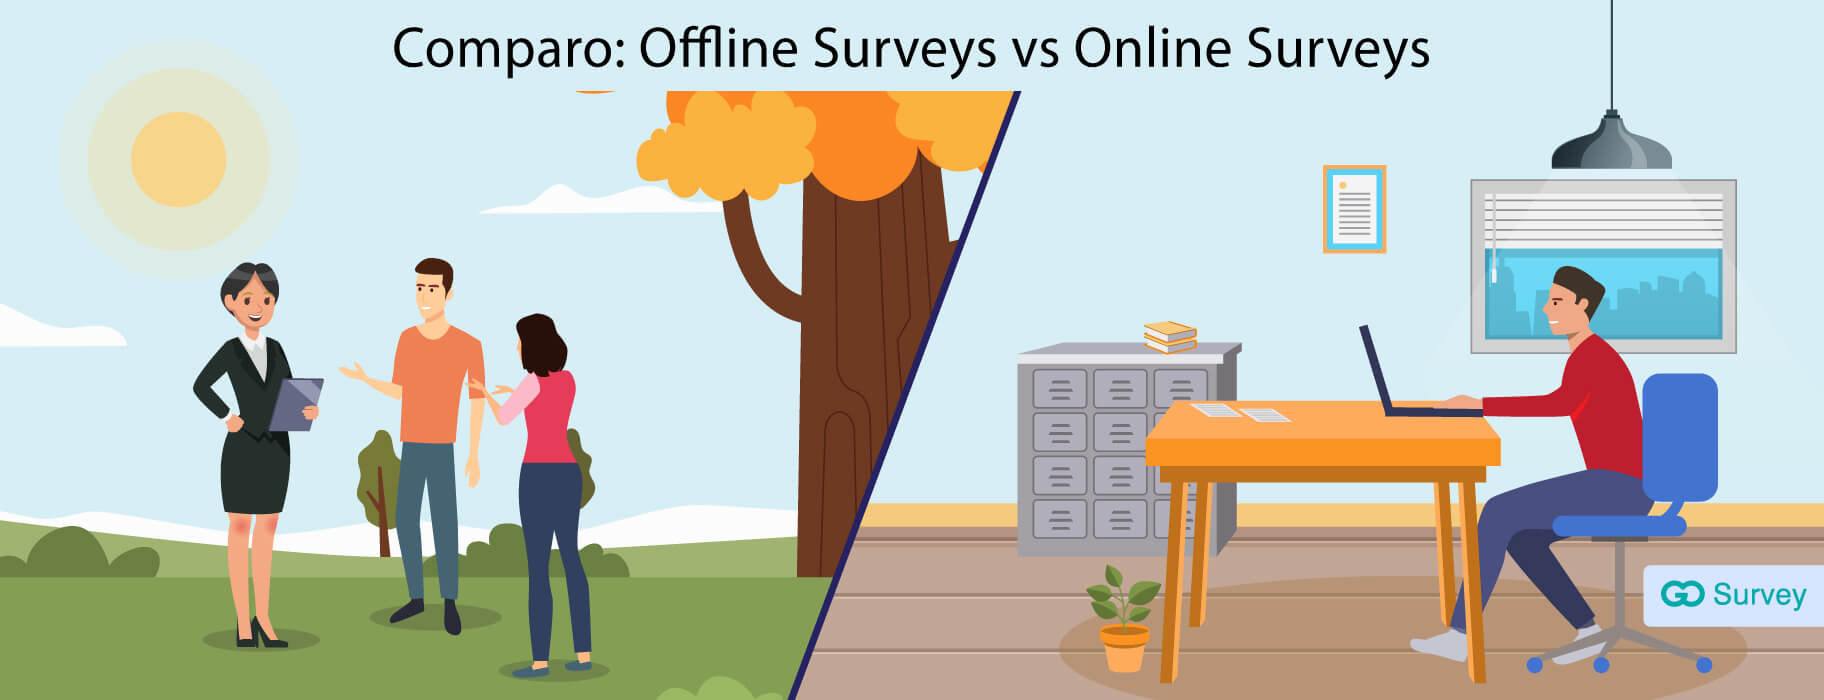 Why choose offline surveys over online surveys?